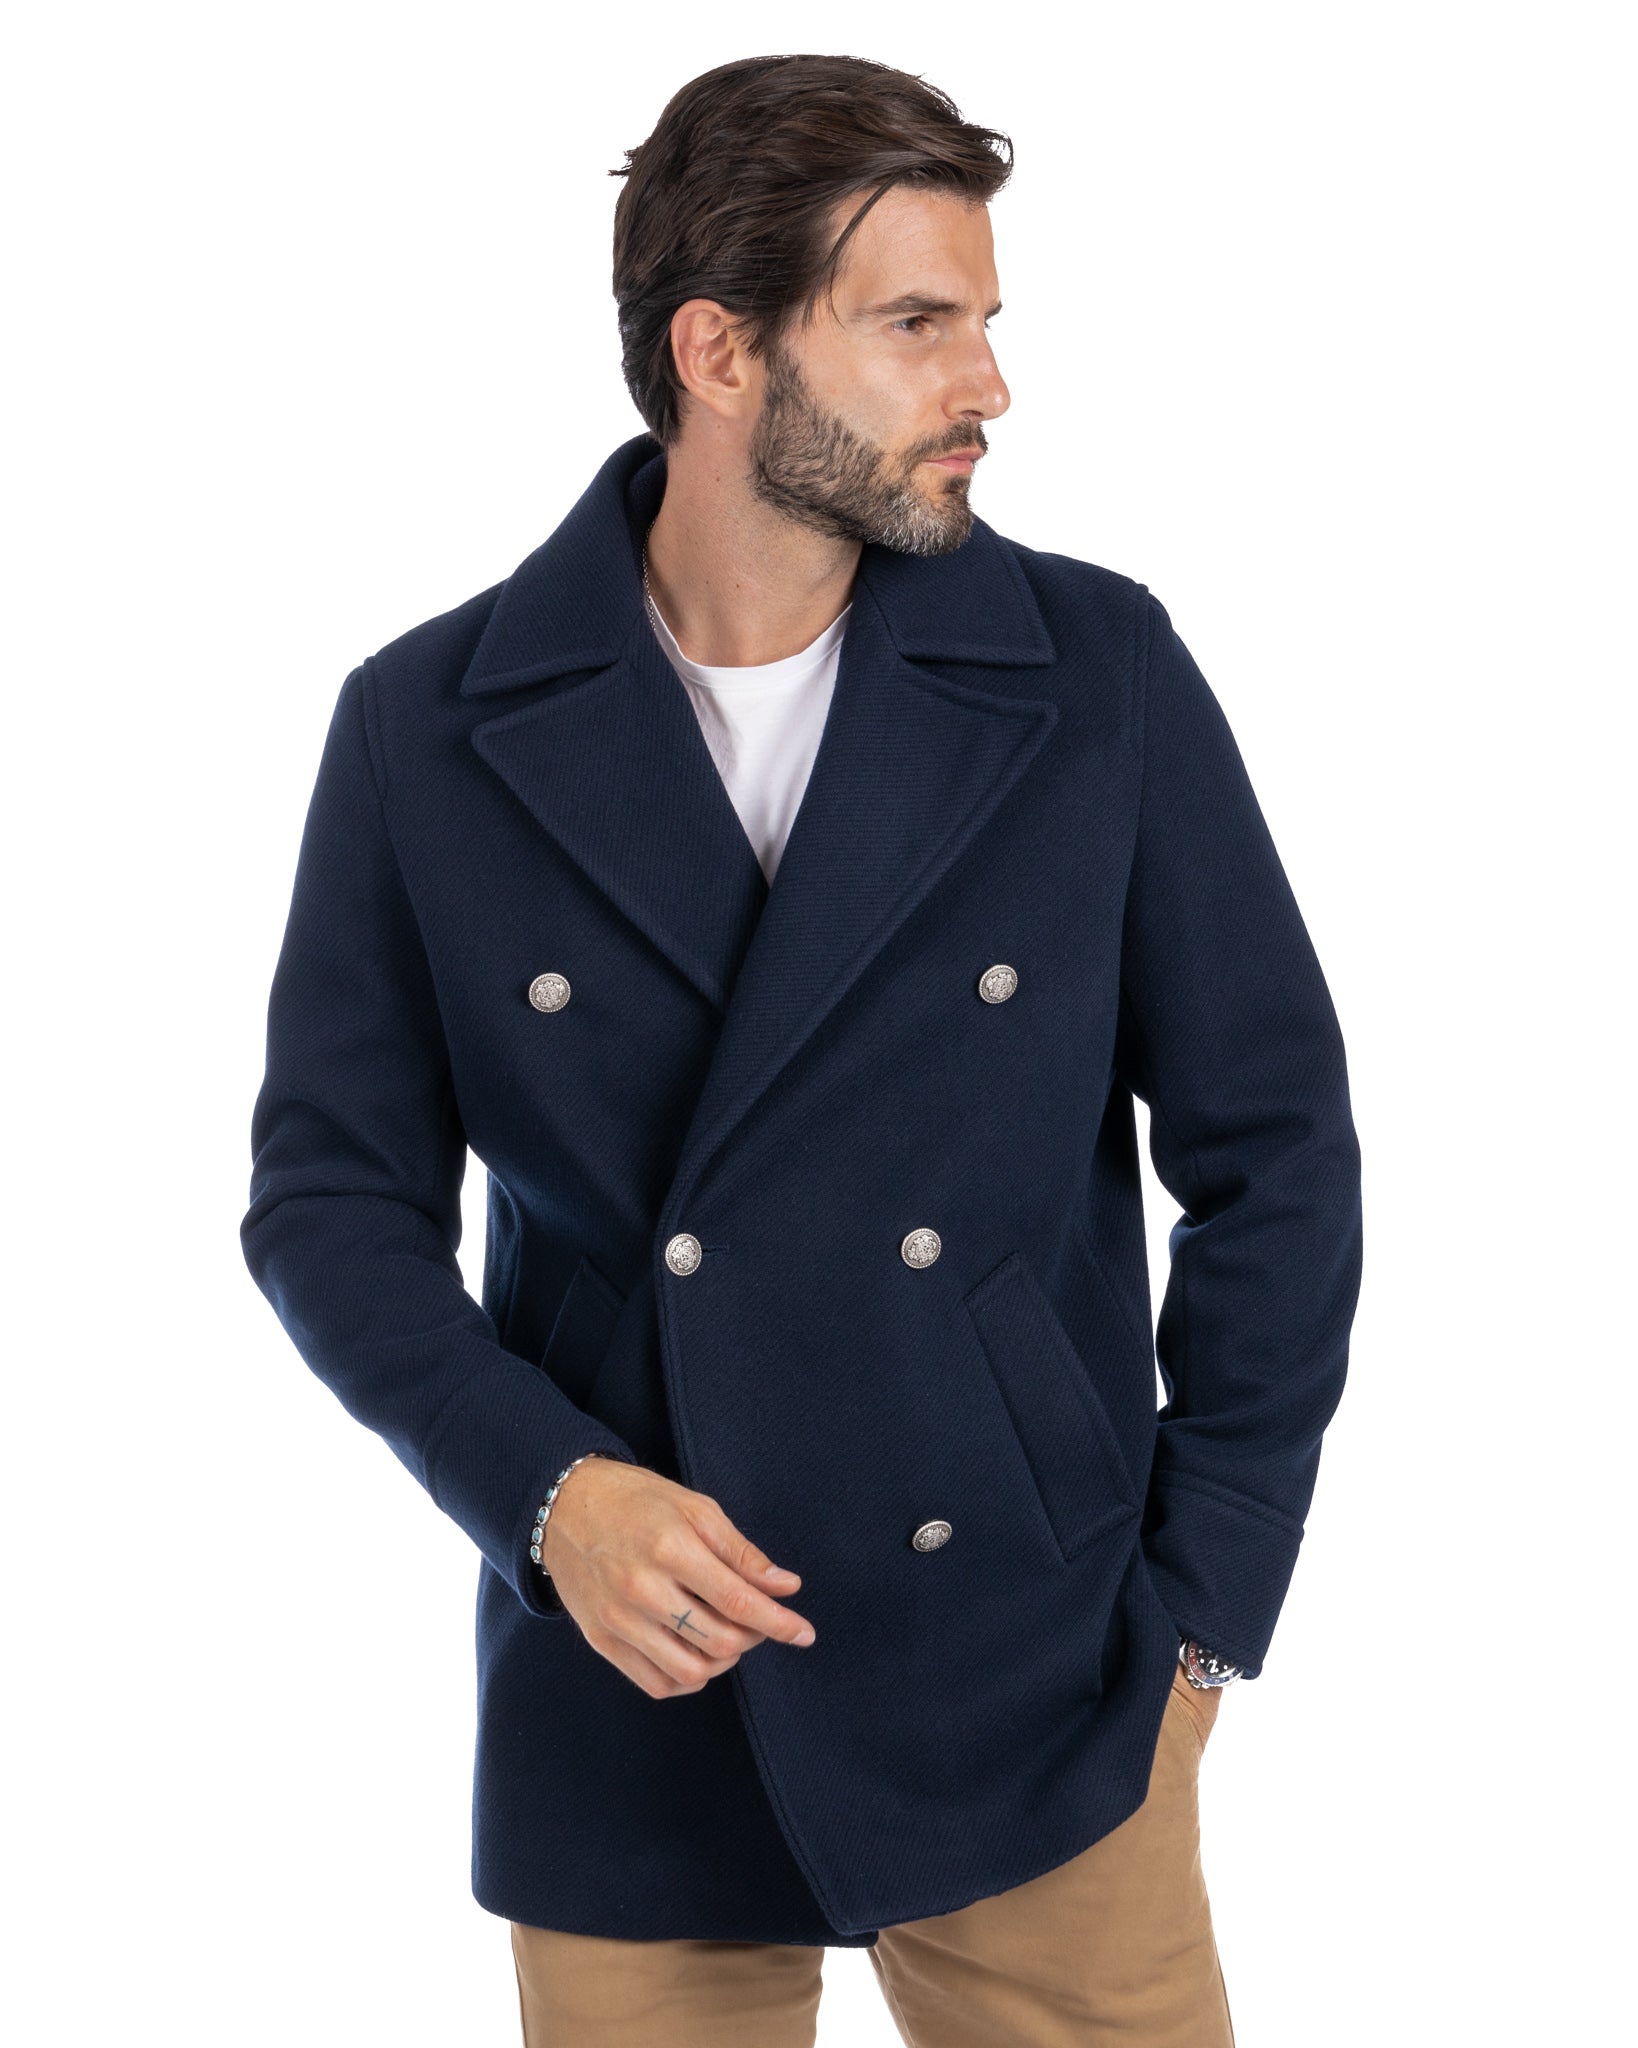 David - blue 3/4 wool coat